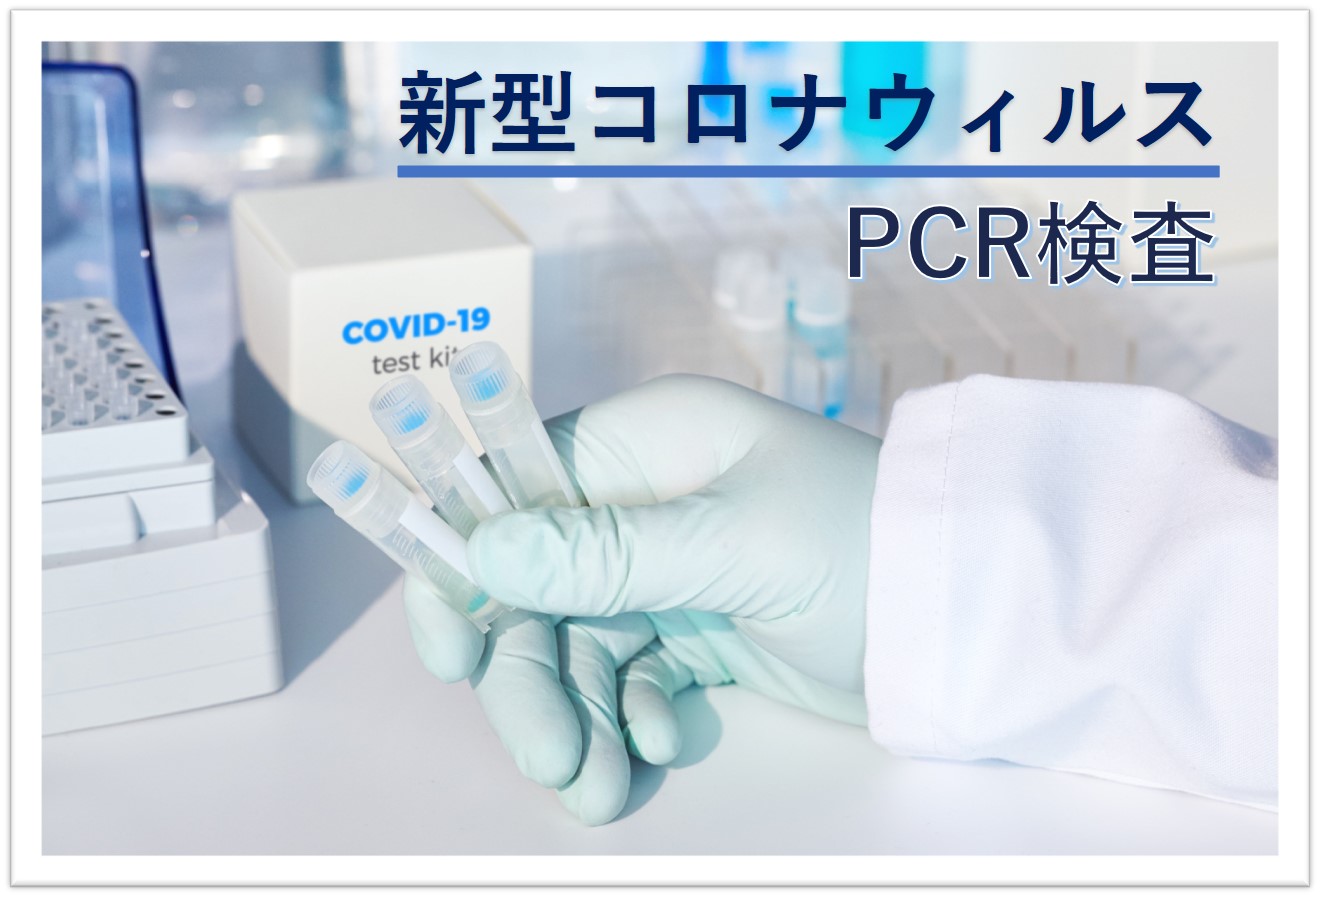 簡単にオンラインで購入できる新型コロナウイルスPCR検査キットを販売開始